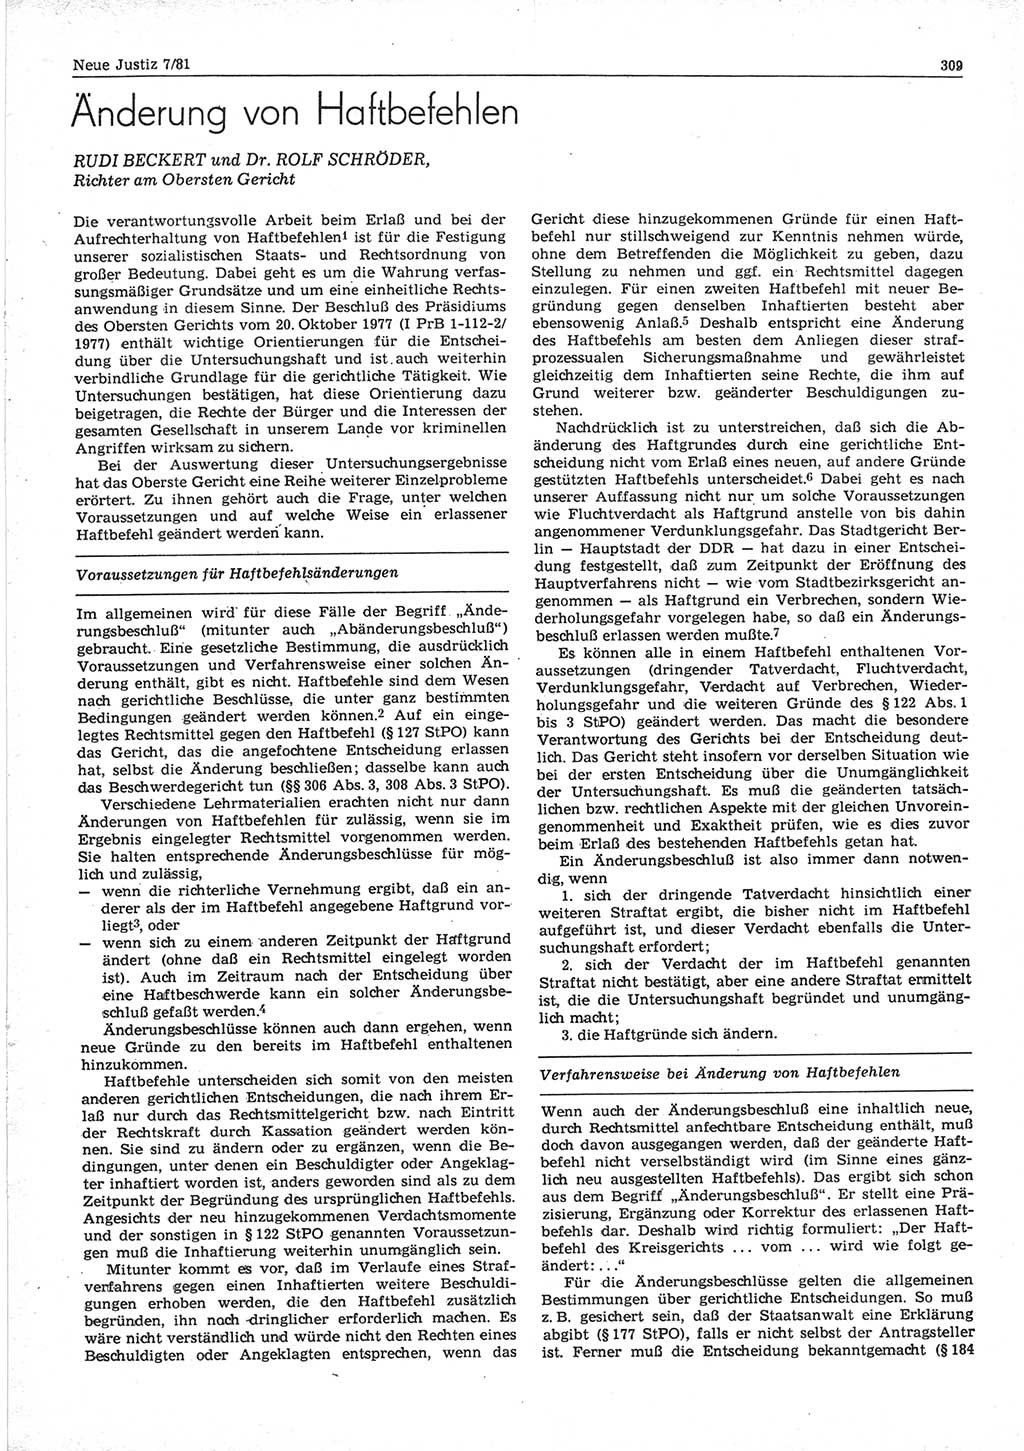 Neue Justiz (NJ), Zeitschrift für sozialistisches Recht und Gesetzlichkeit [Deutsche Demokratische Republik (DDR)], 35. Jahrgang 1981, Seite 309 (NJ DDR 1981, S. 309)